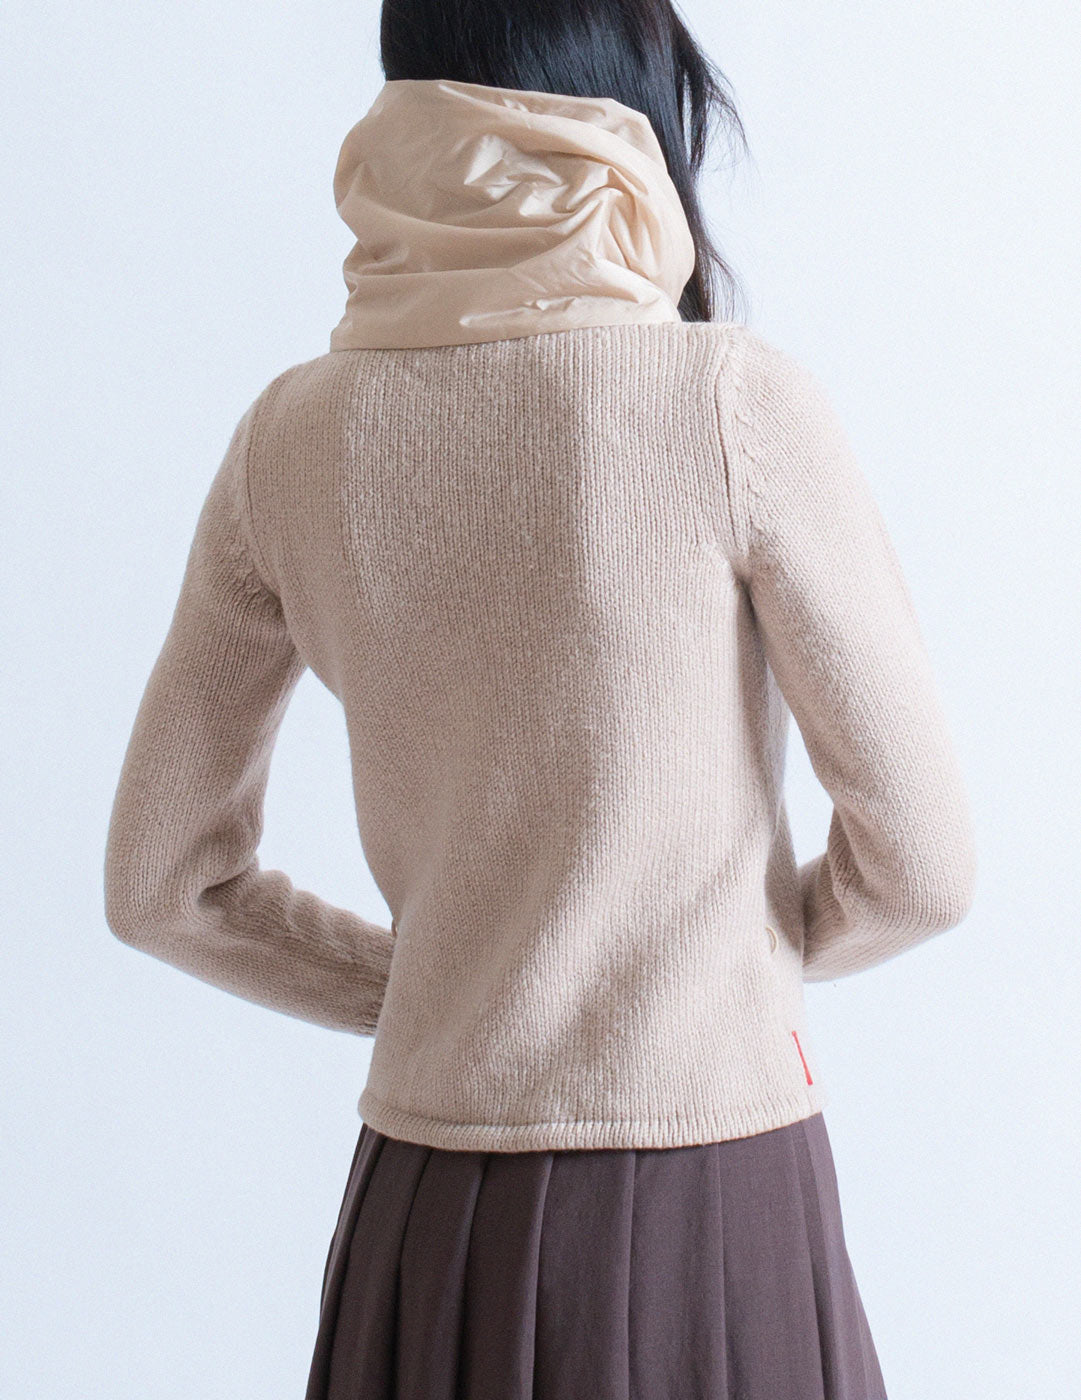 Prada puffy nylon turtleneck wool sweater back detail